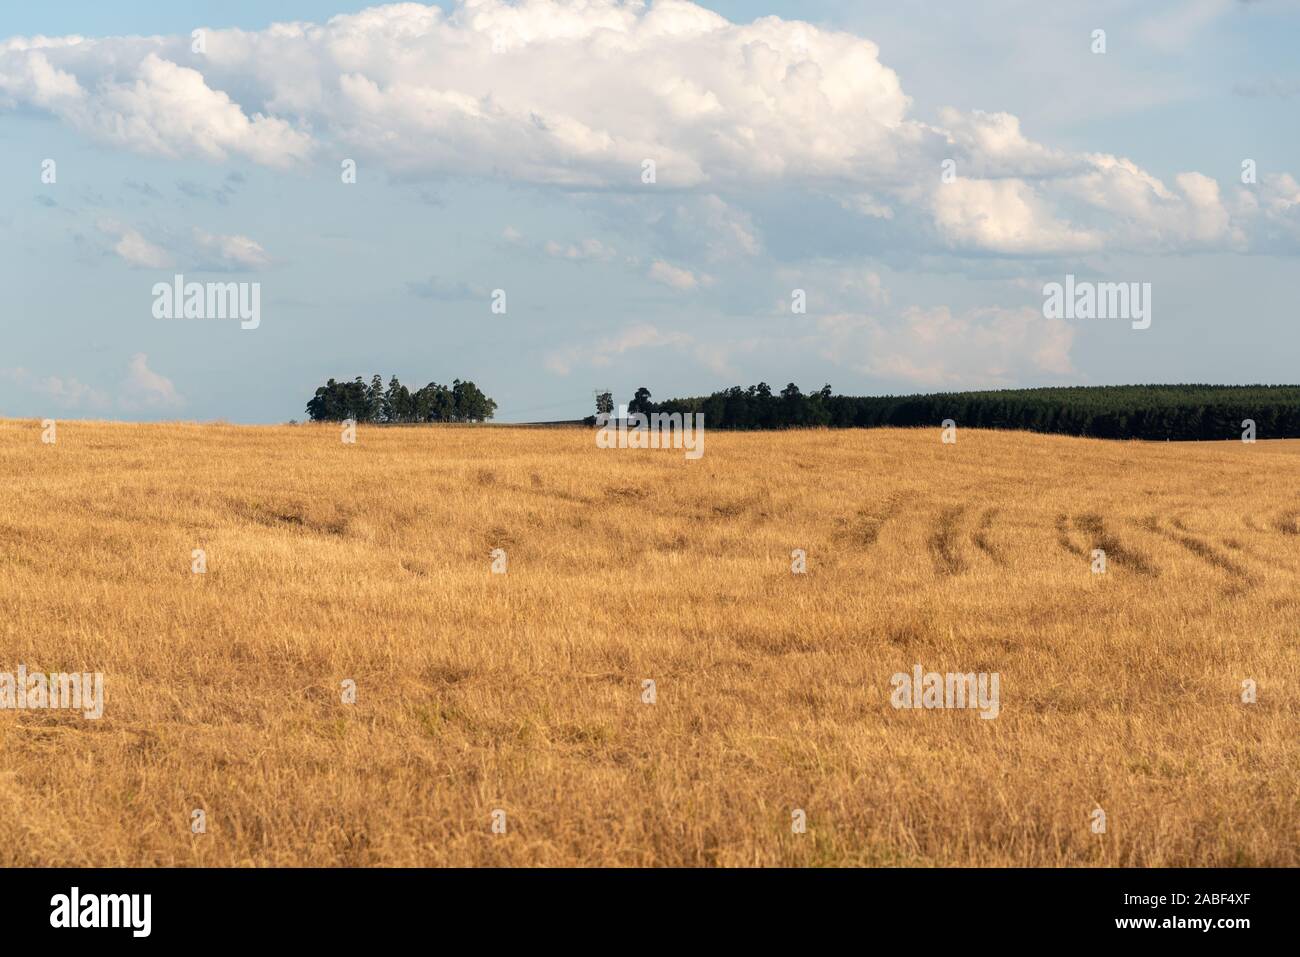 Ländliche Landschaft im Süden Brasiliens. Agrarproduktion in der Sojaregion für den menschlichen Verzehr. Stockfoto